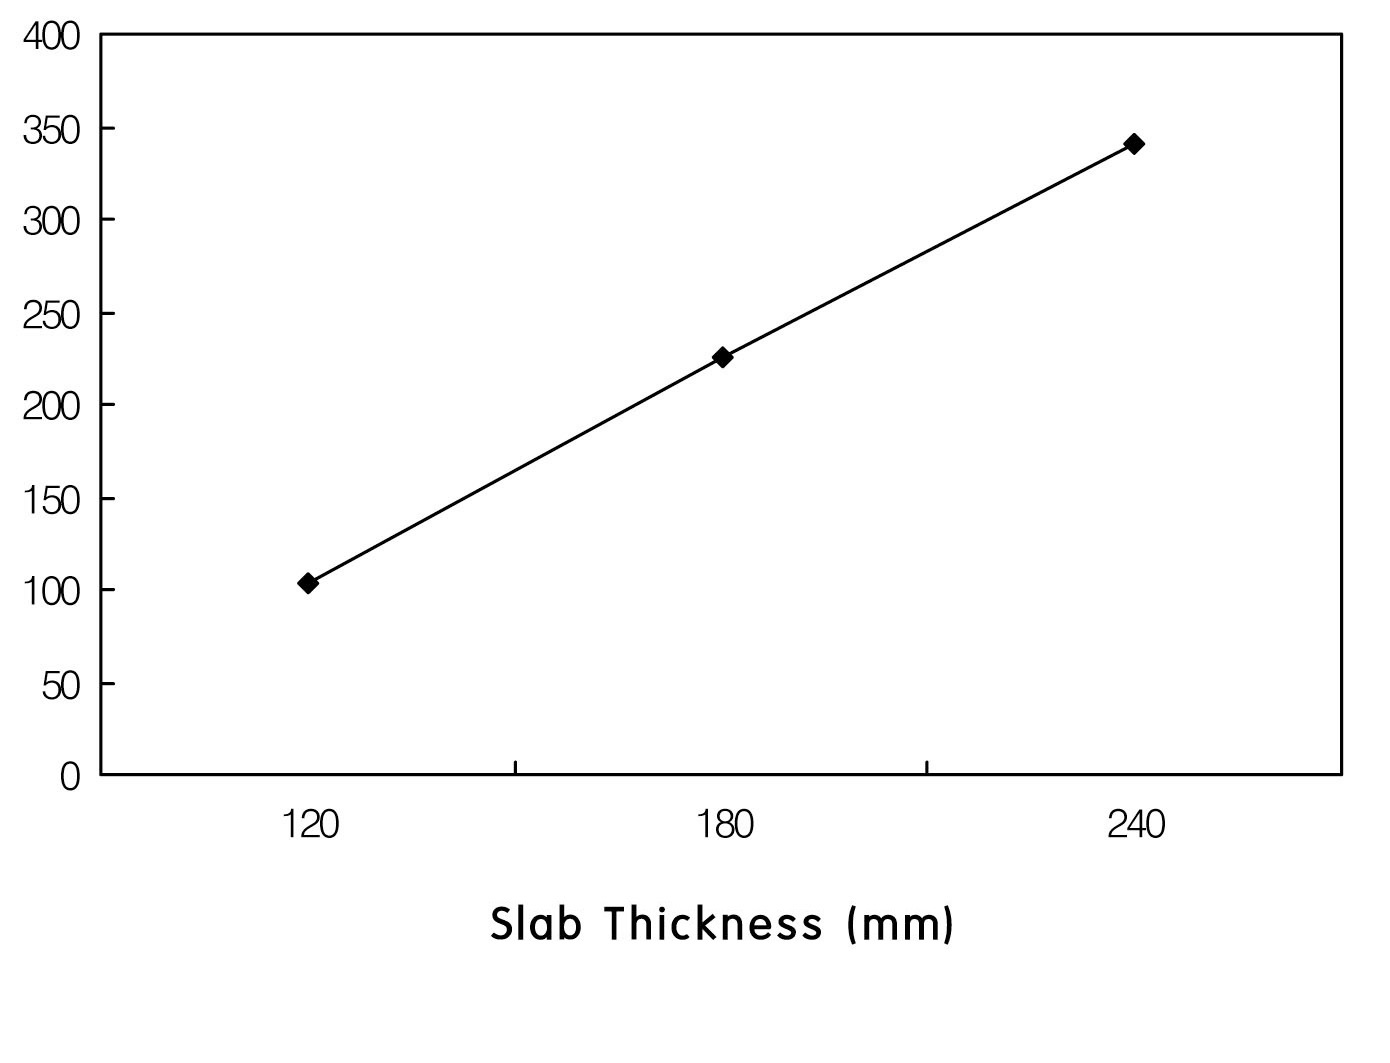 Slab Thickness Versus Maximum Reaction